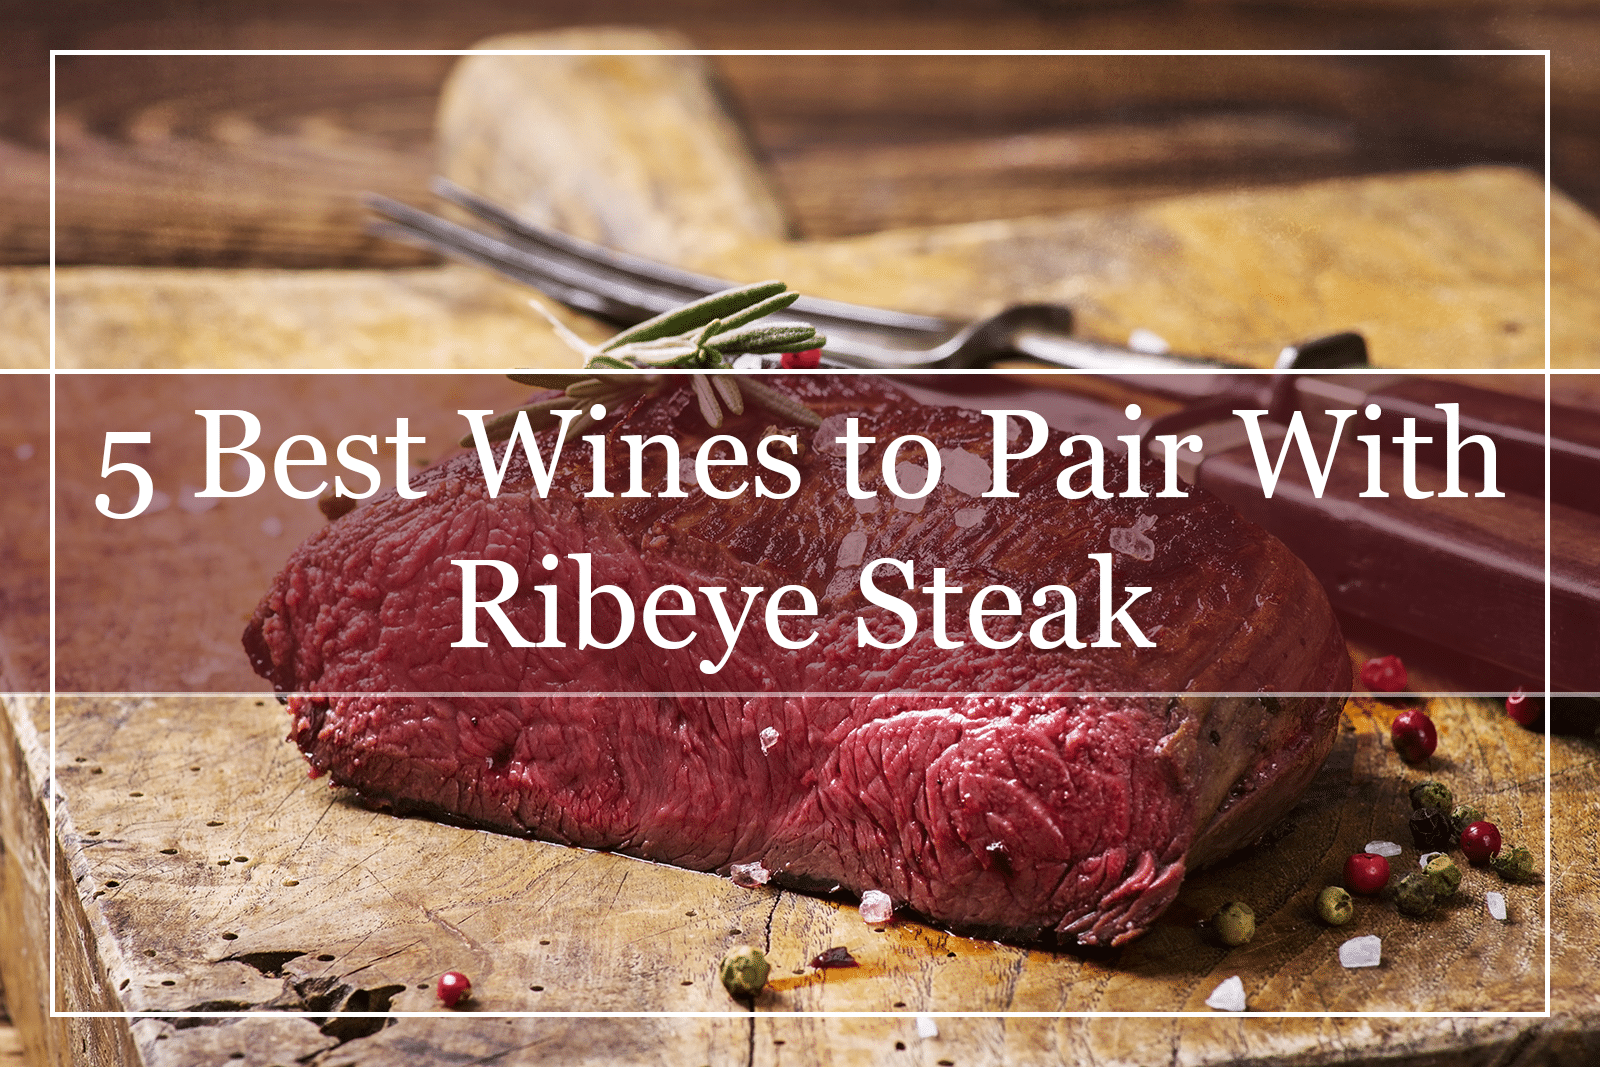 5 Best Wines to Pair With Ribeye Steak (2021)